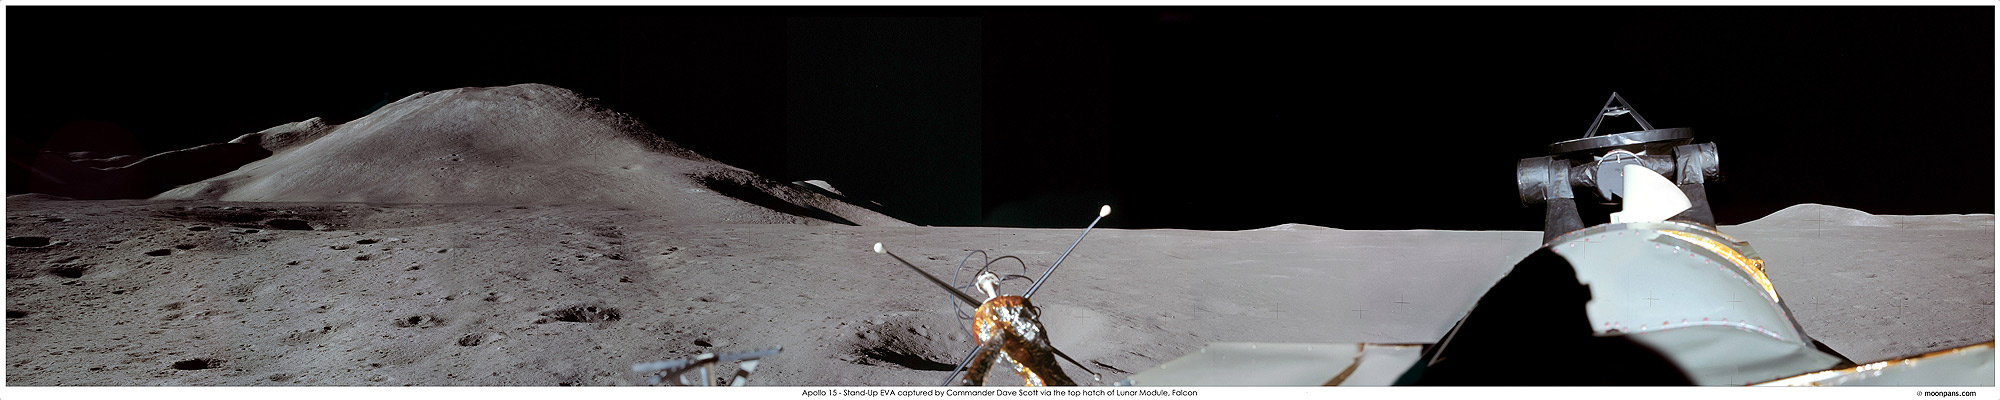 Apollo 15 panorama photo